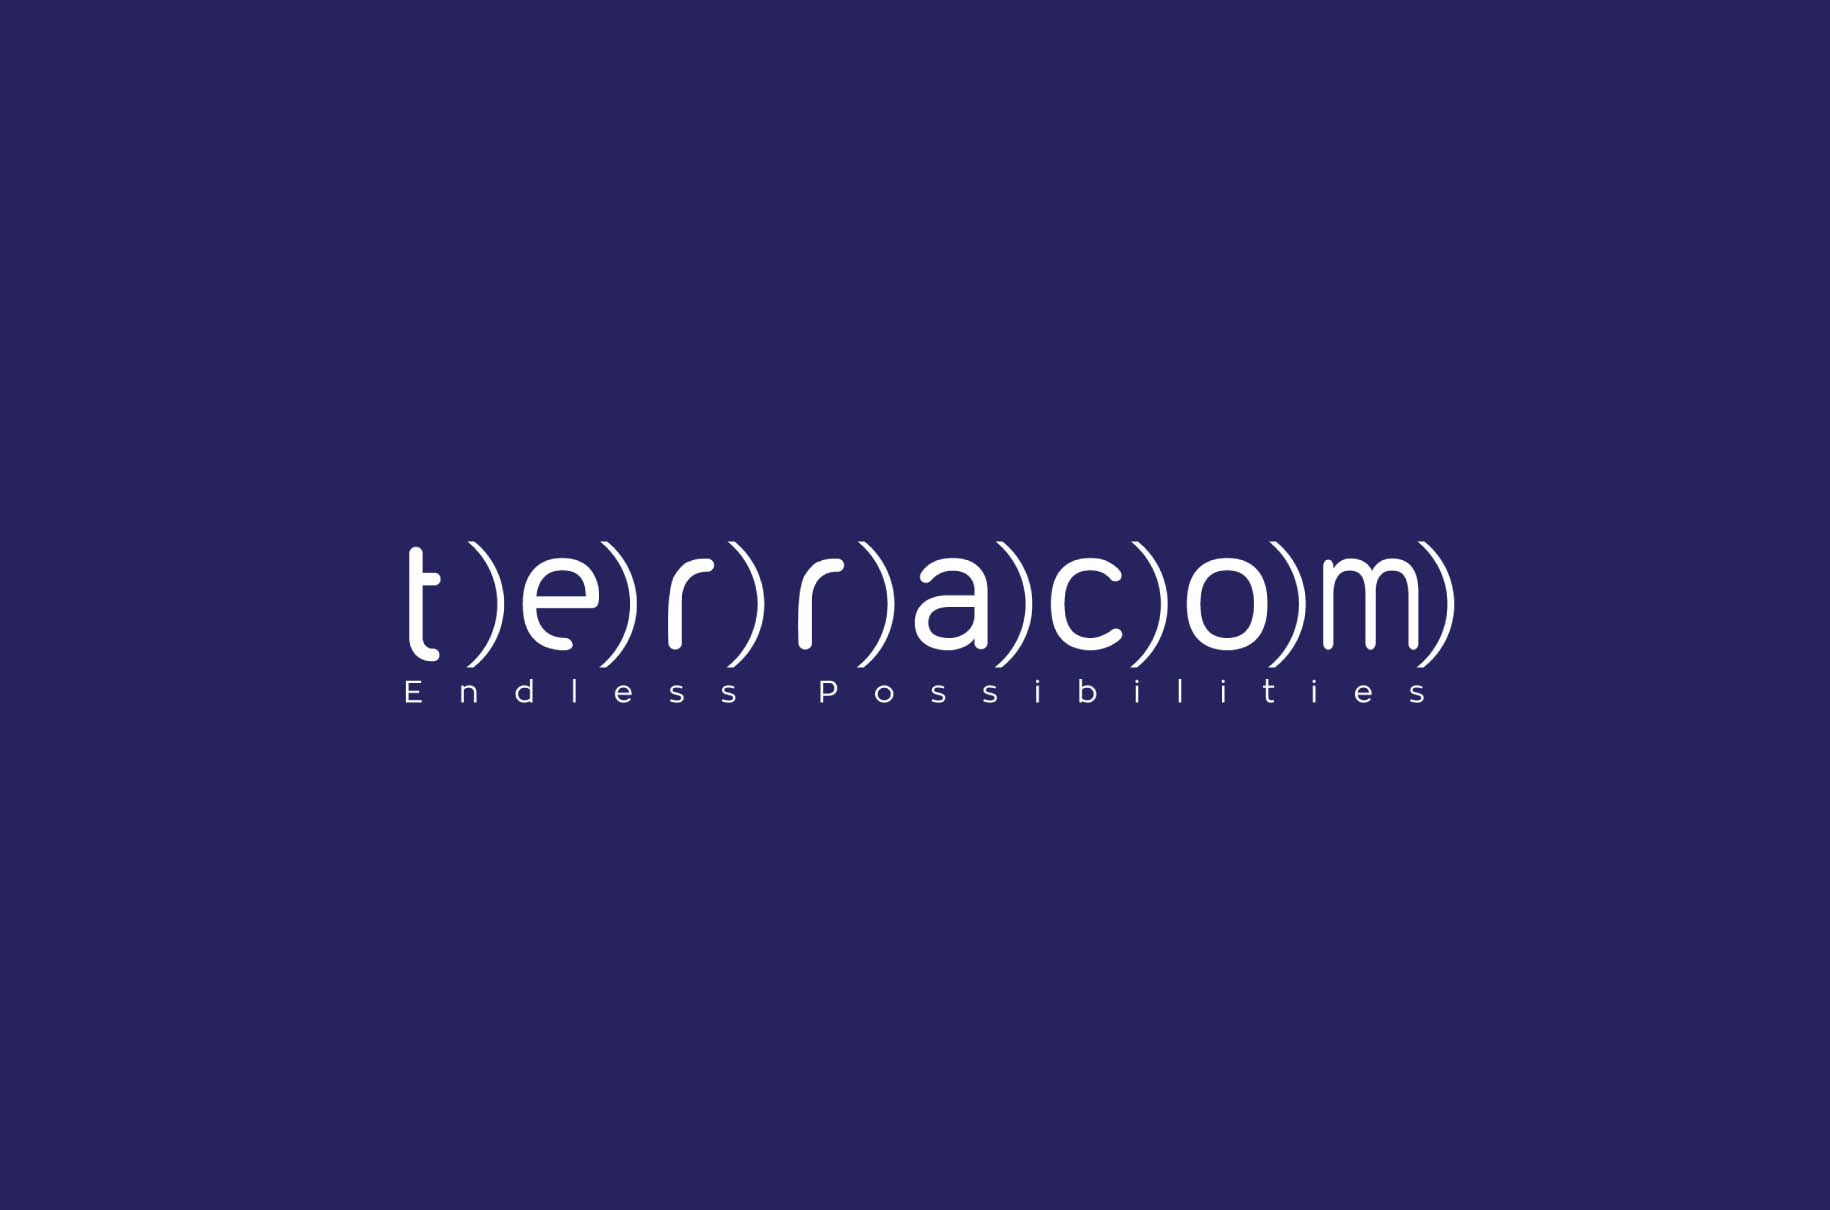 Terracom: Τετραήμερη εργασία ξανά το καλοκαίρι